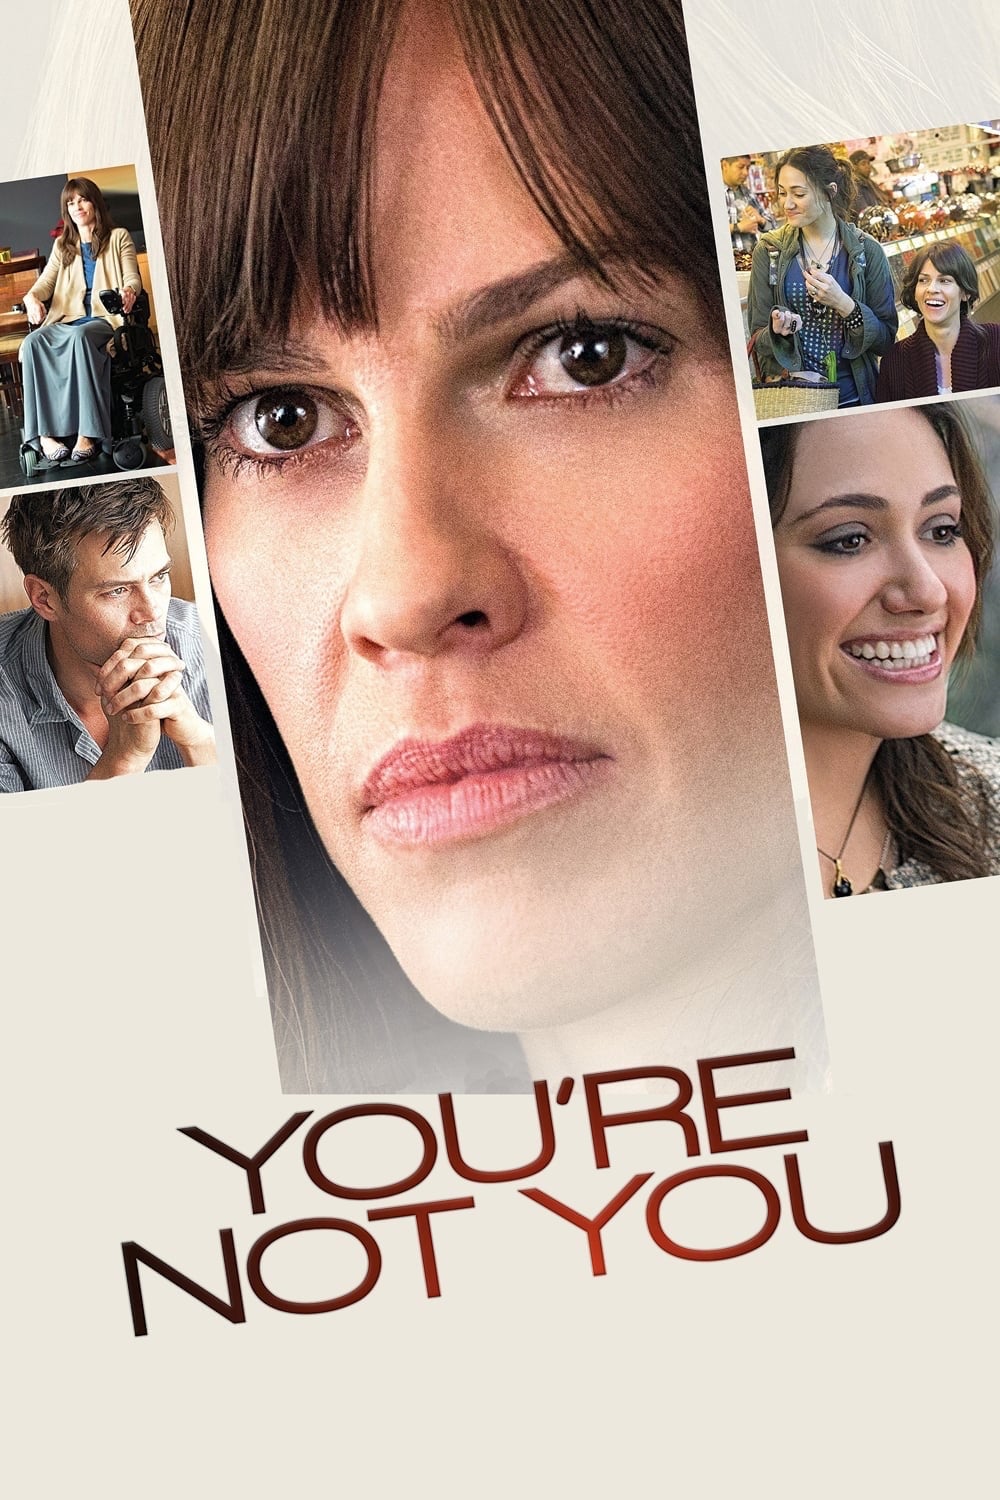 Không Đơn Độc - You're Not You (2014)